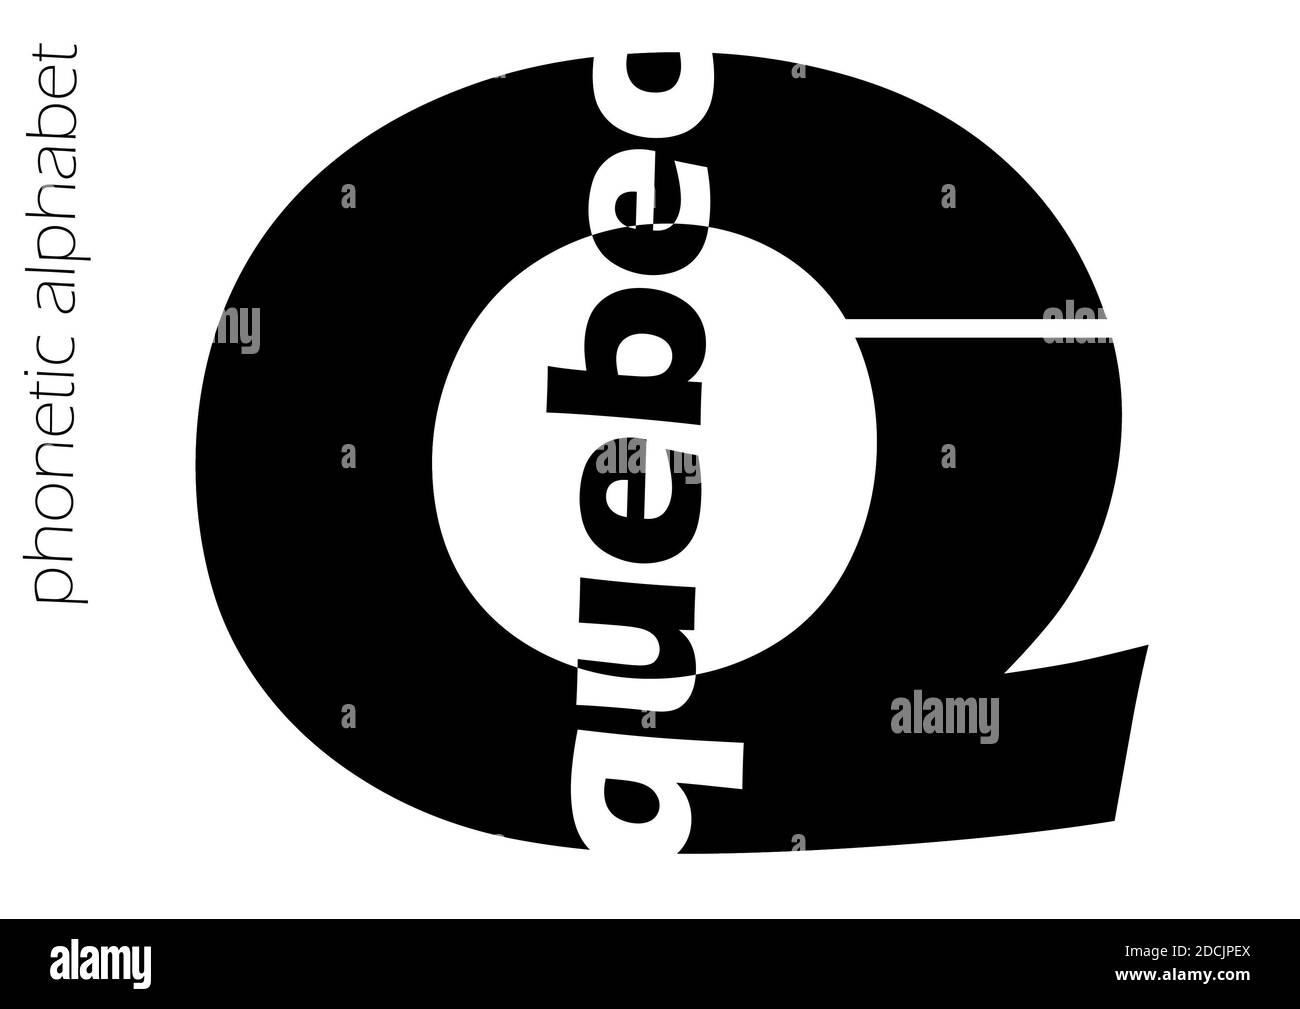 Alfabeto fonetico basato sulla nato, design in bianco e nero per decorazioni semplici Foto Stock